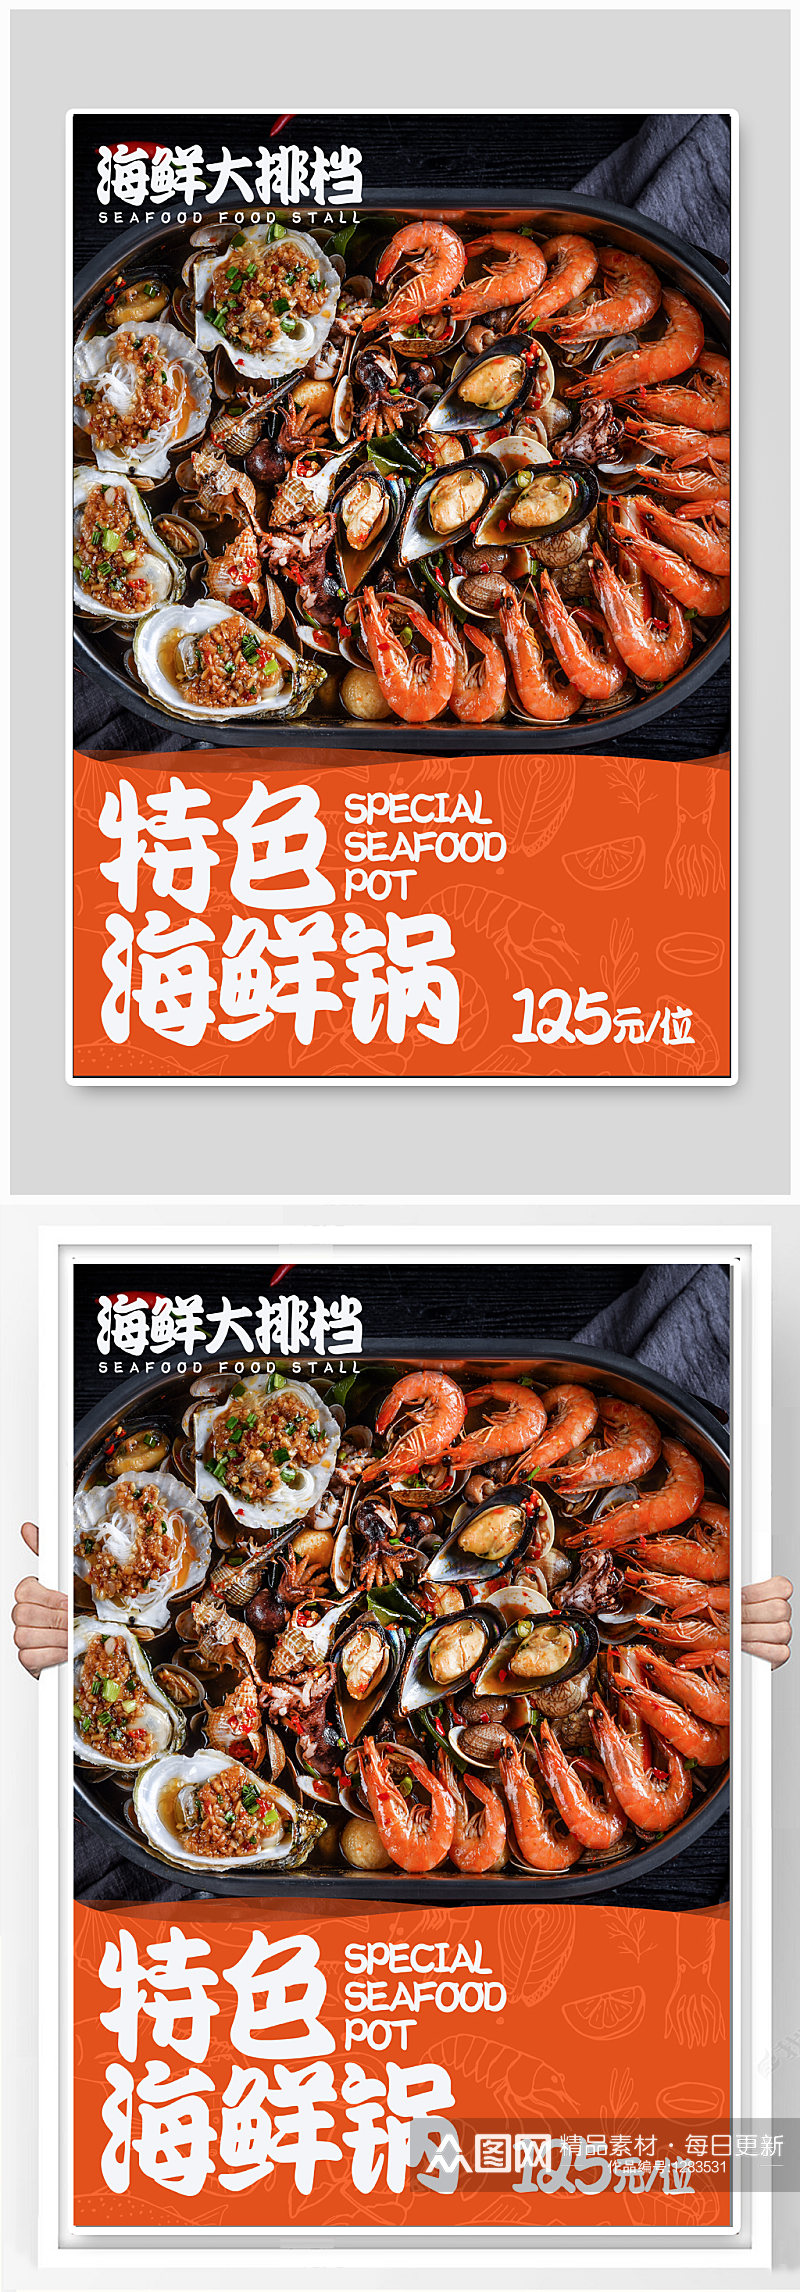 特色海鲜锅美食海报素材